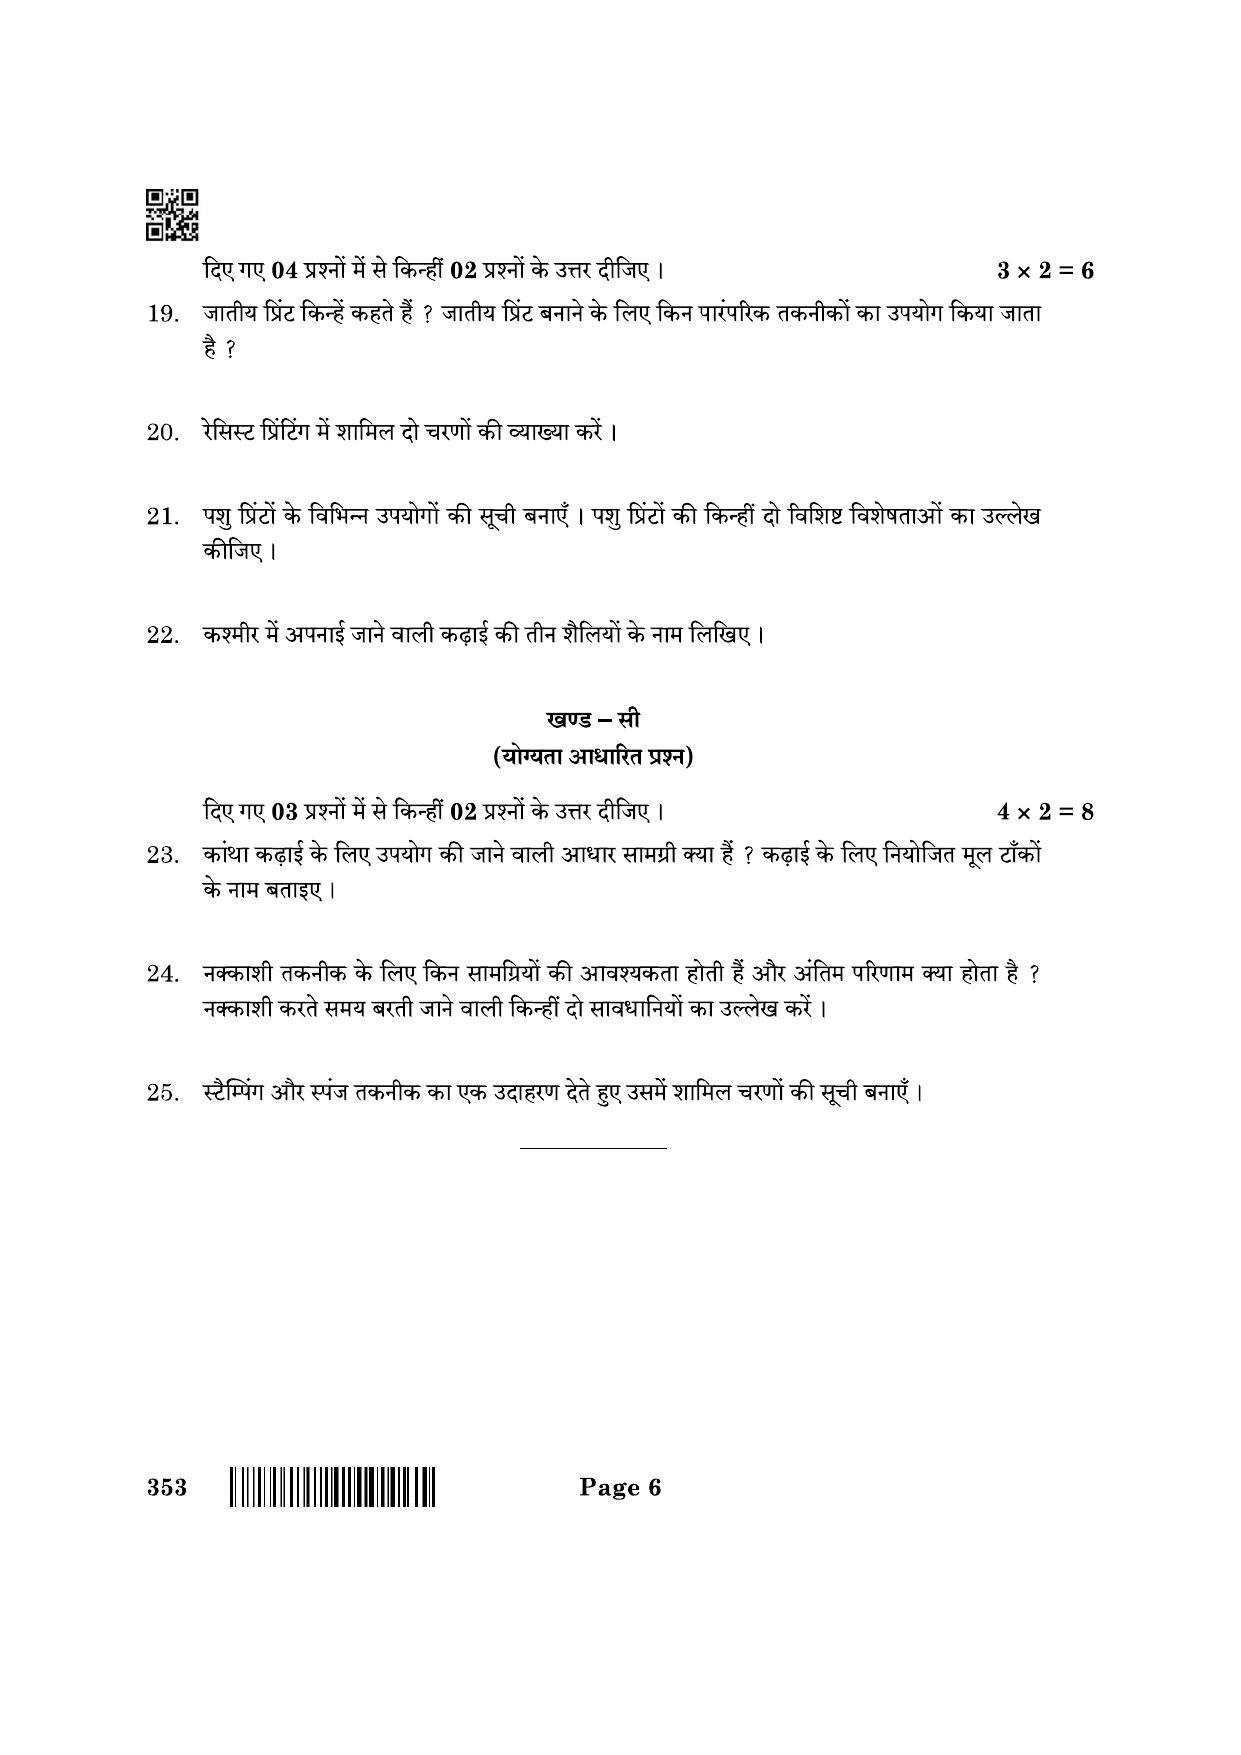 CBSE Class 12 353_Textile Design 2022 Question Paper - Page 6